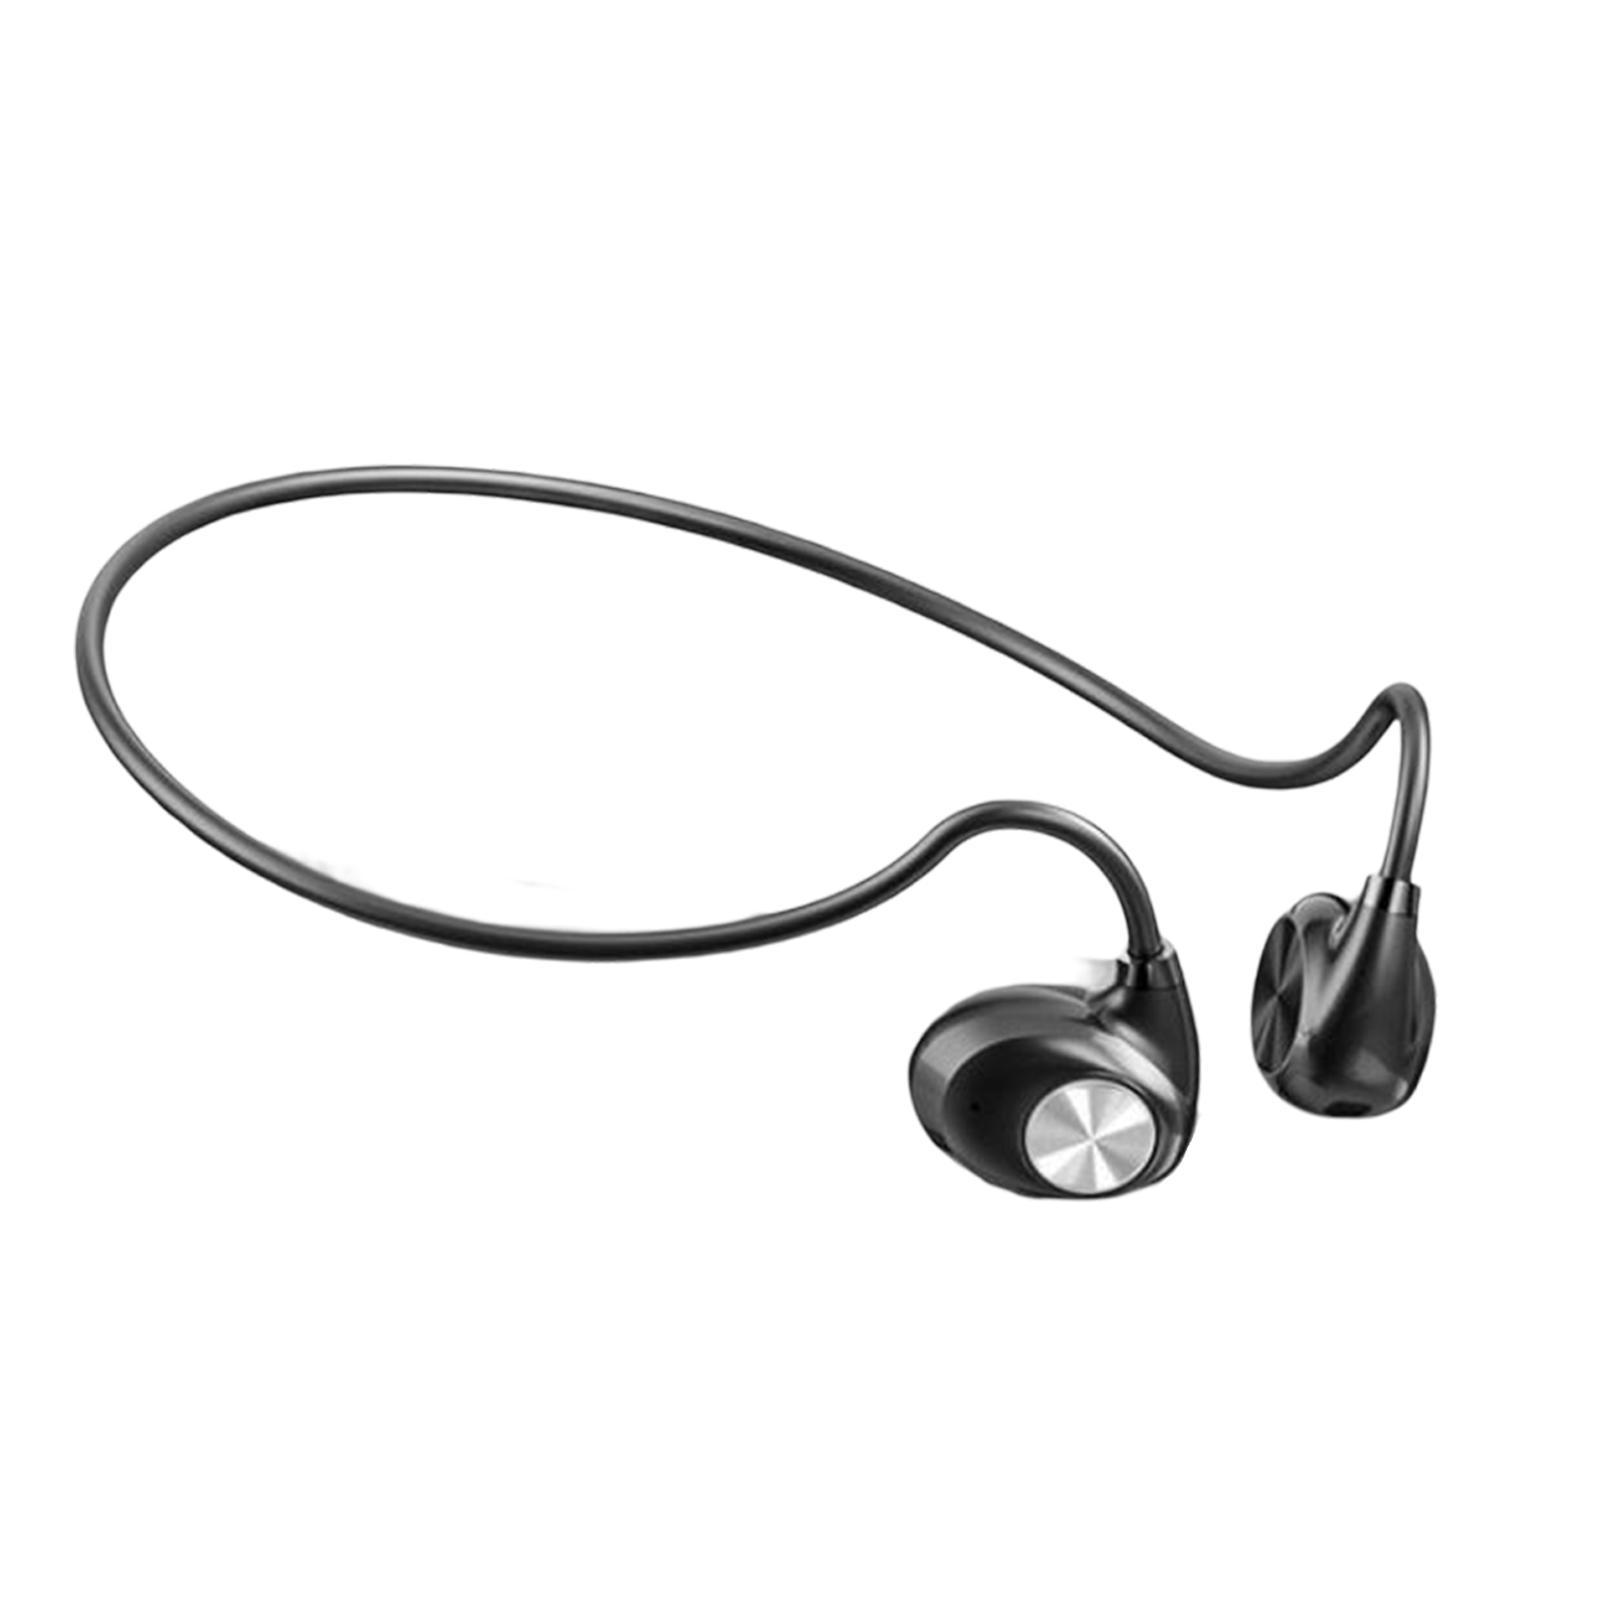 Earphone with Microphone Sports Hiking Headphone Black